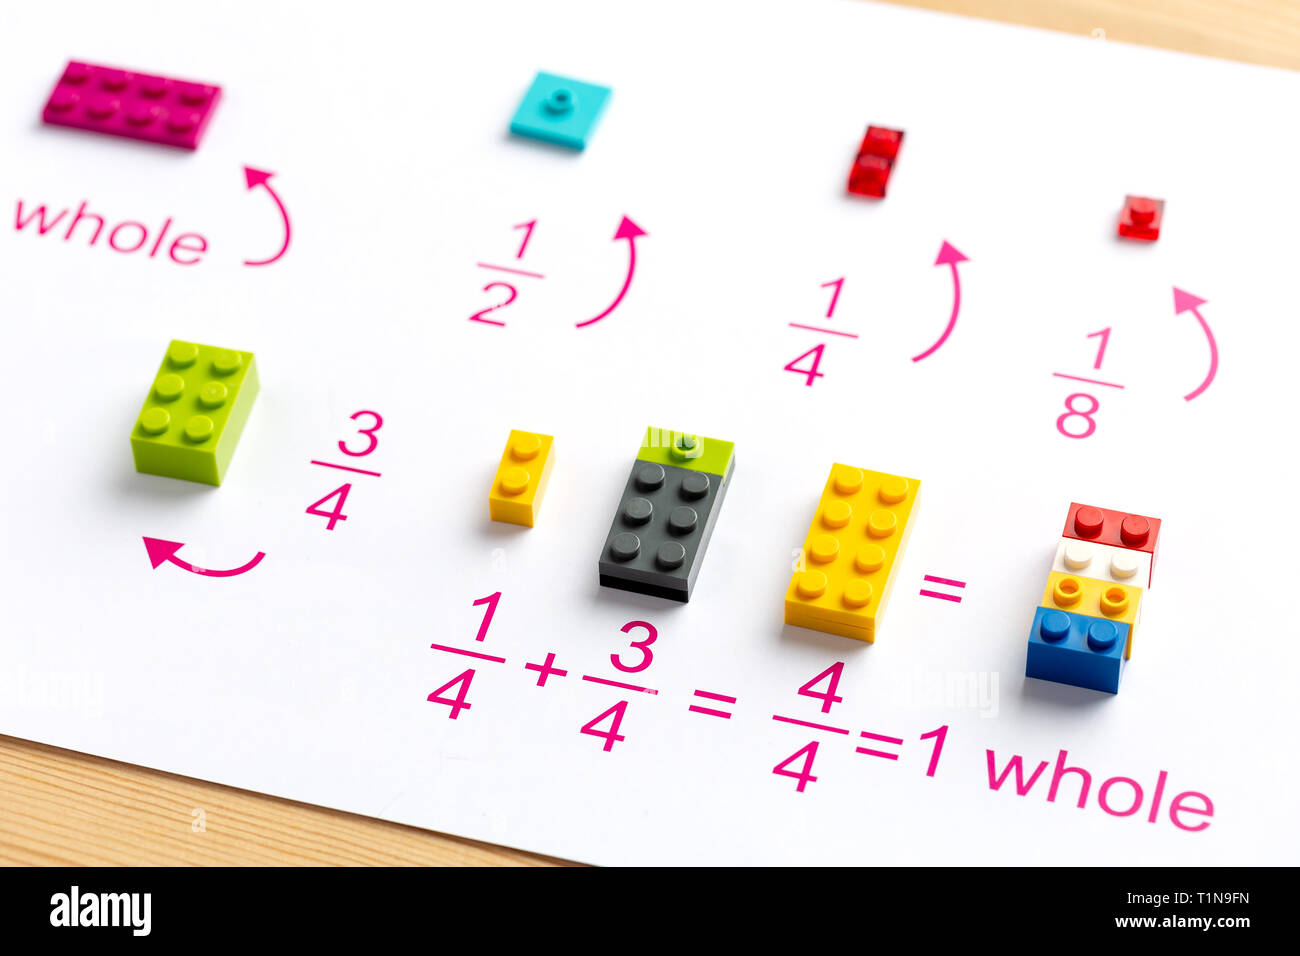 Das Kind bringt die farbigen Blöcke an der richtigen Stelle. Mathe Spiele  für Kinder. Mathematik, Logik, Ausbildung Stockfotografie - Alamy